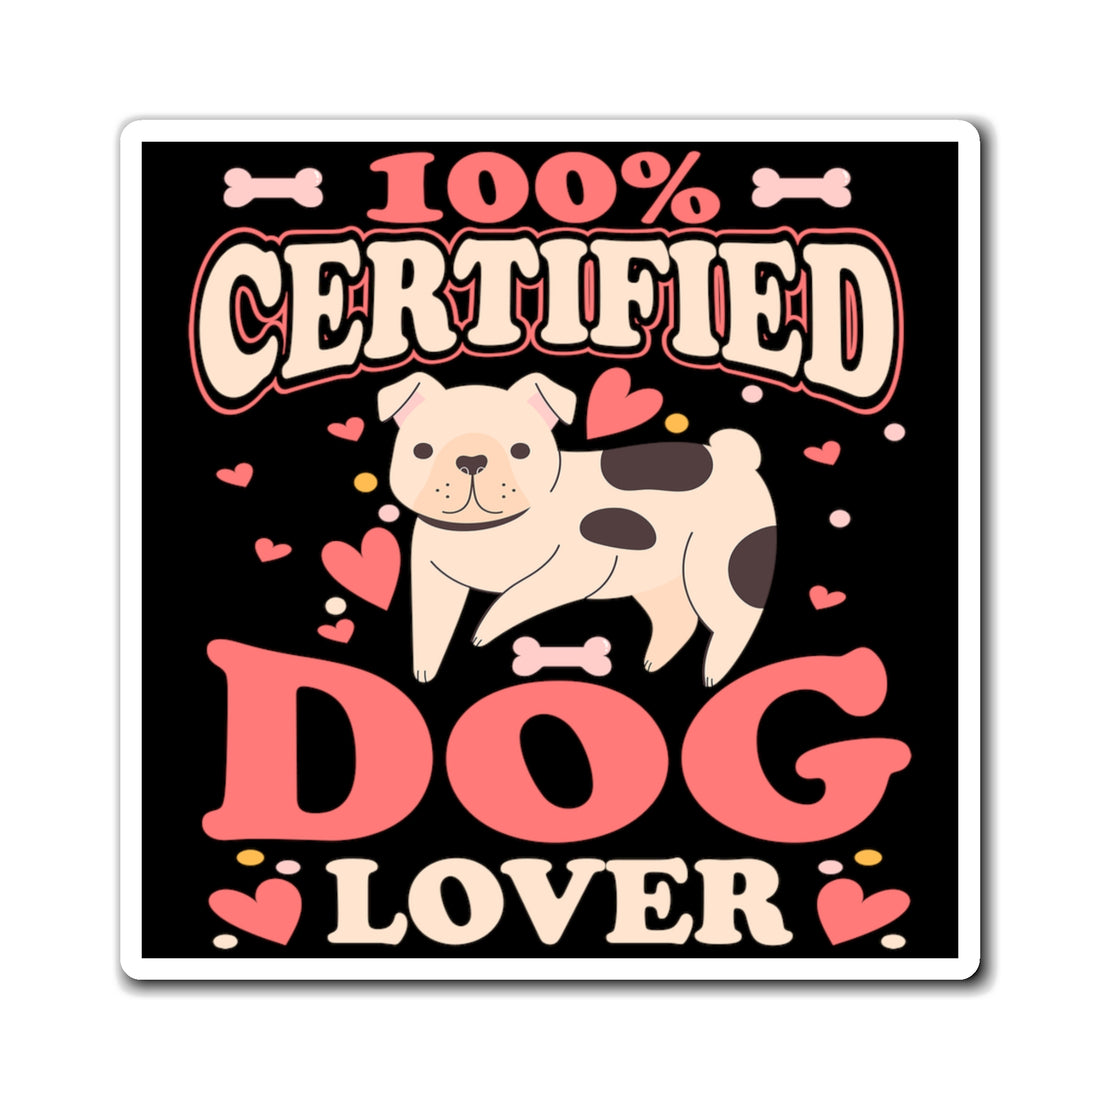 100% Certified Dog Lover - Magnet